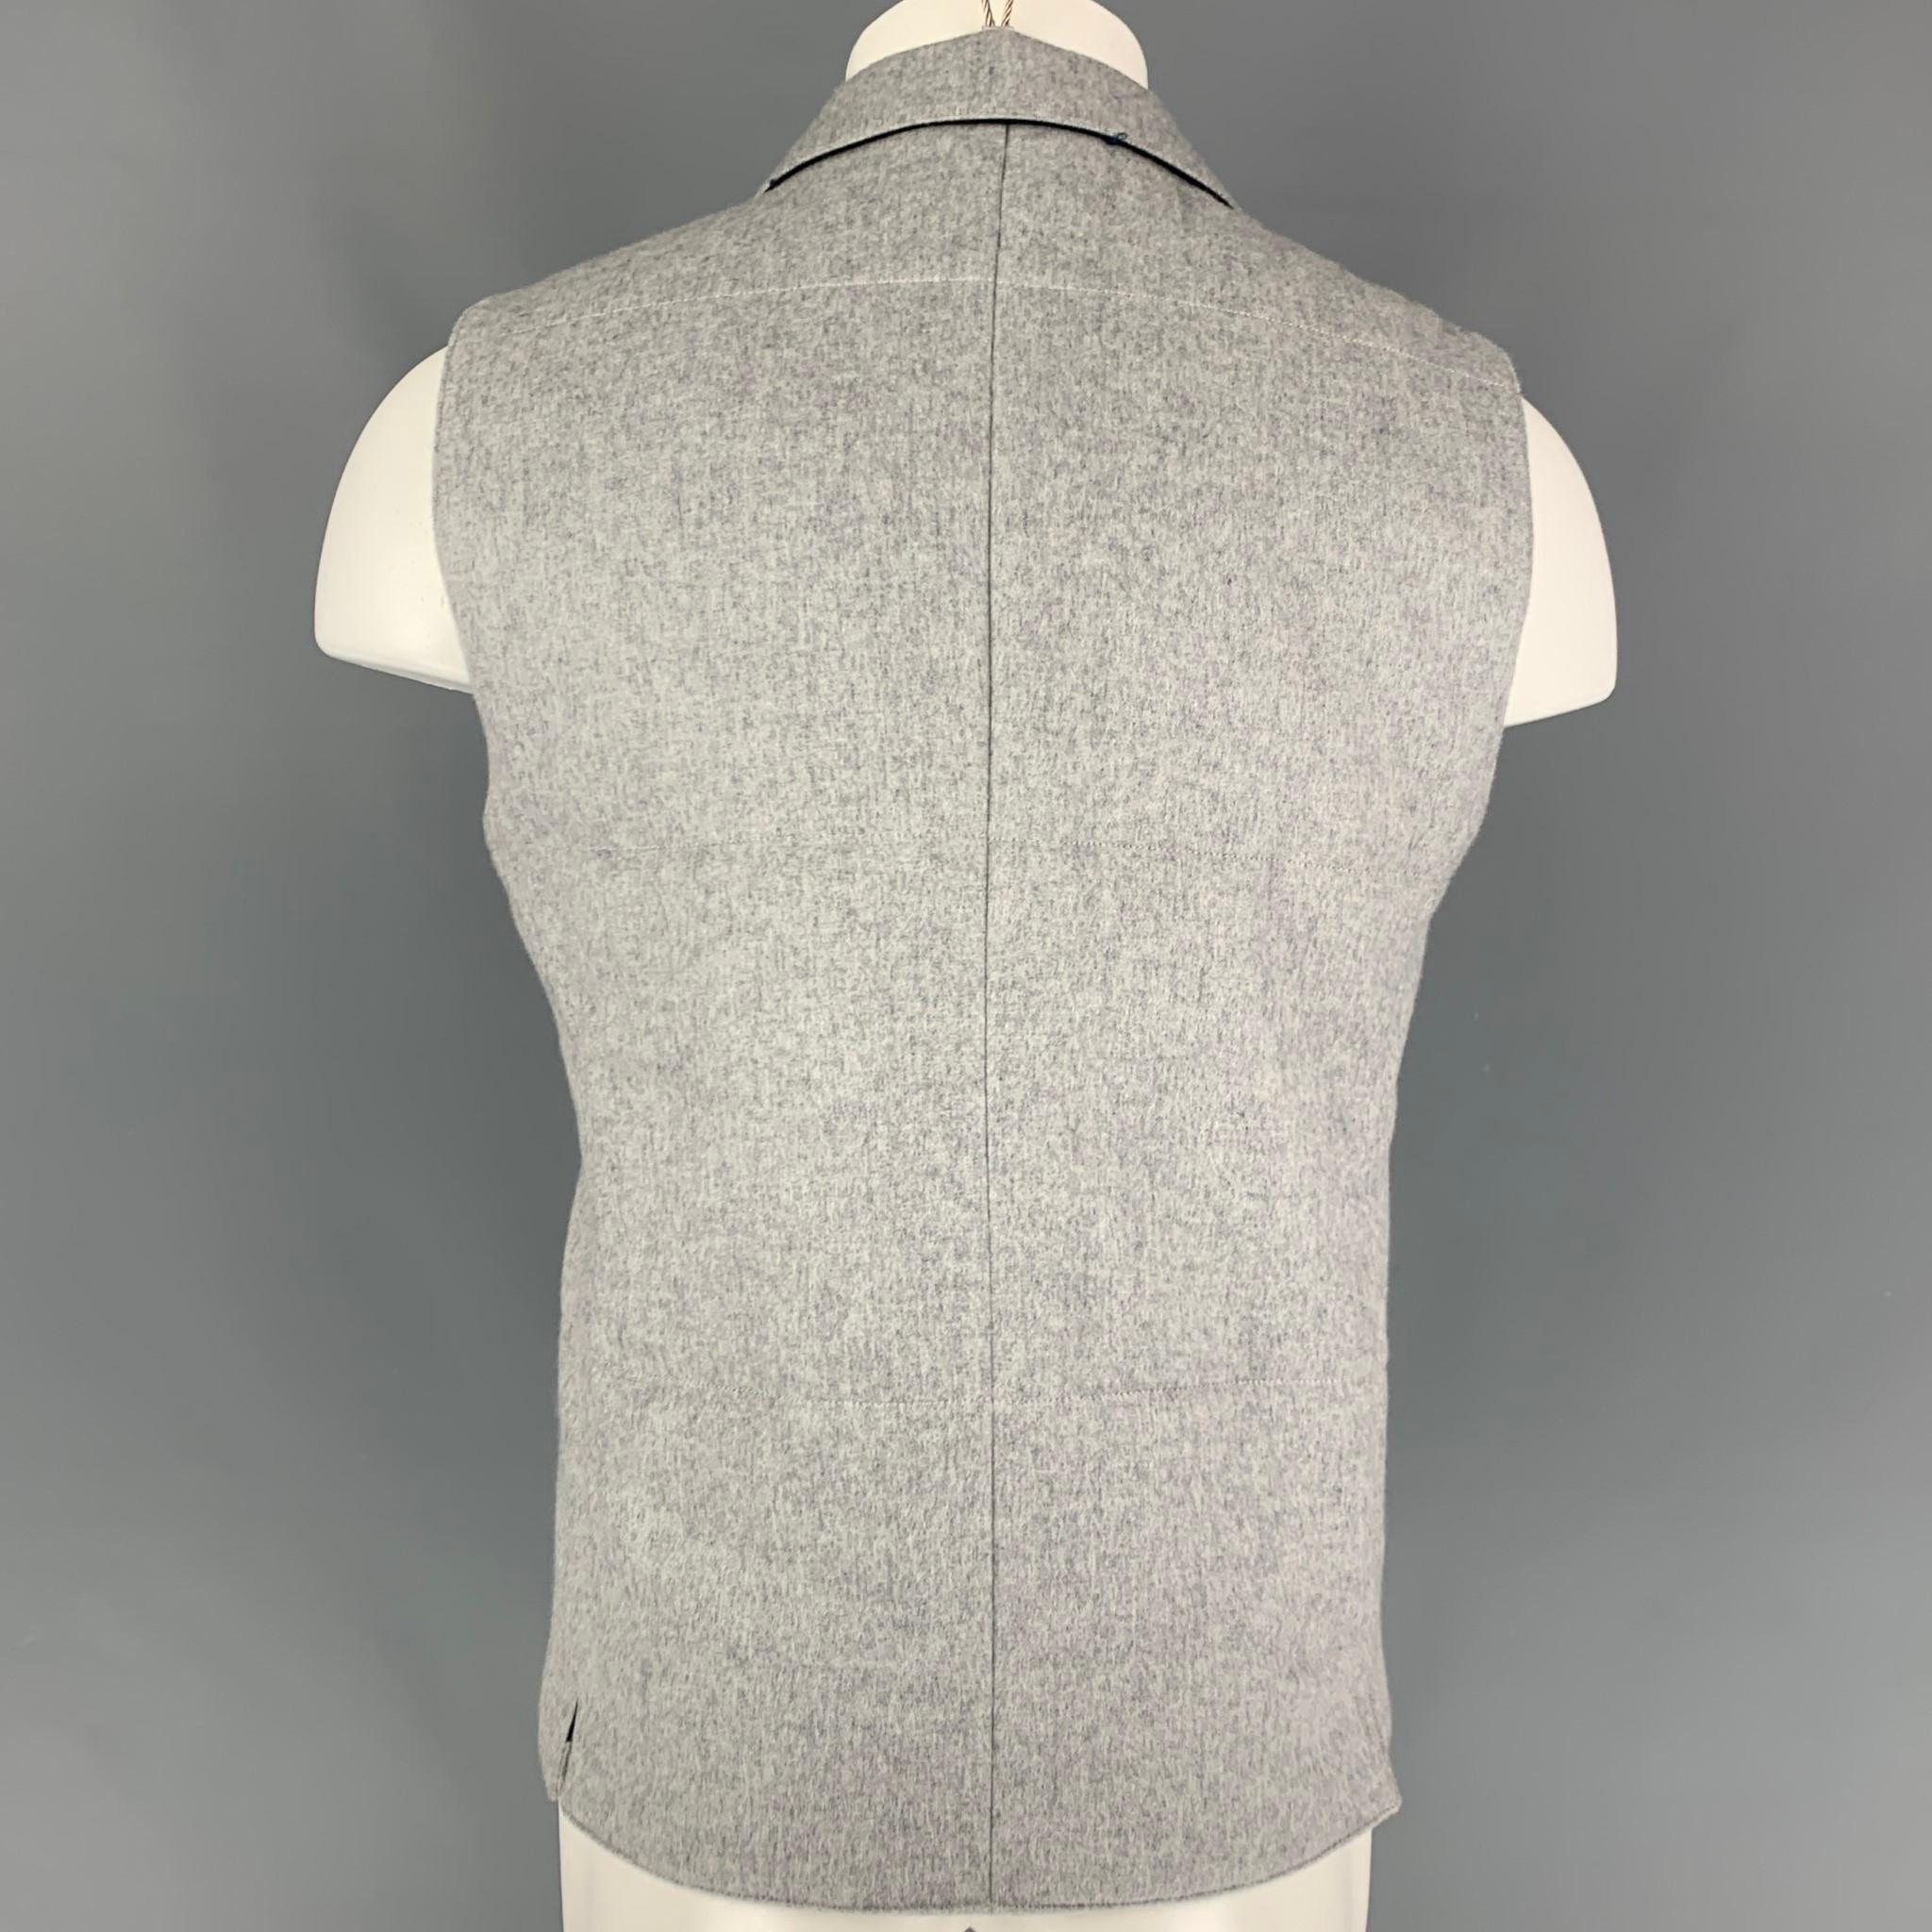 suit supply vest